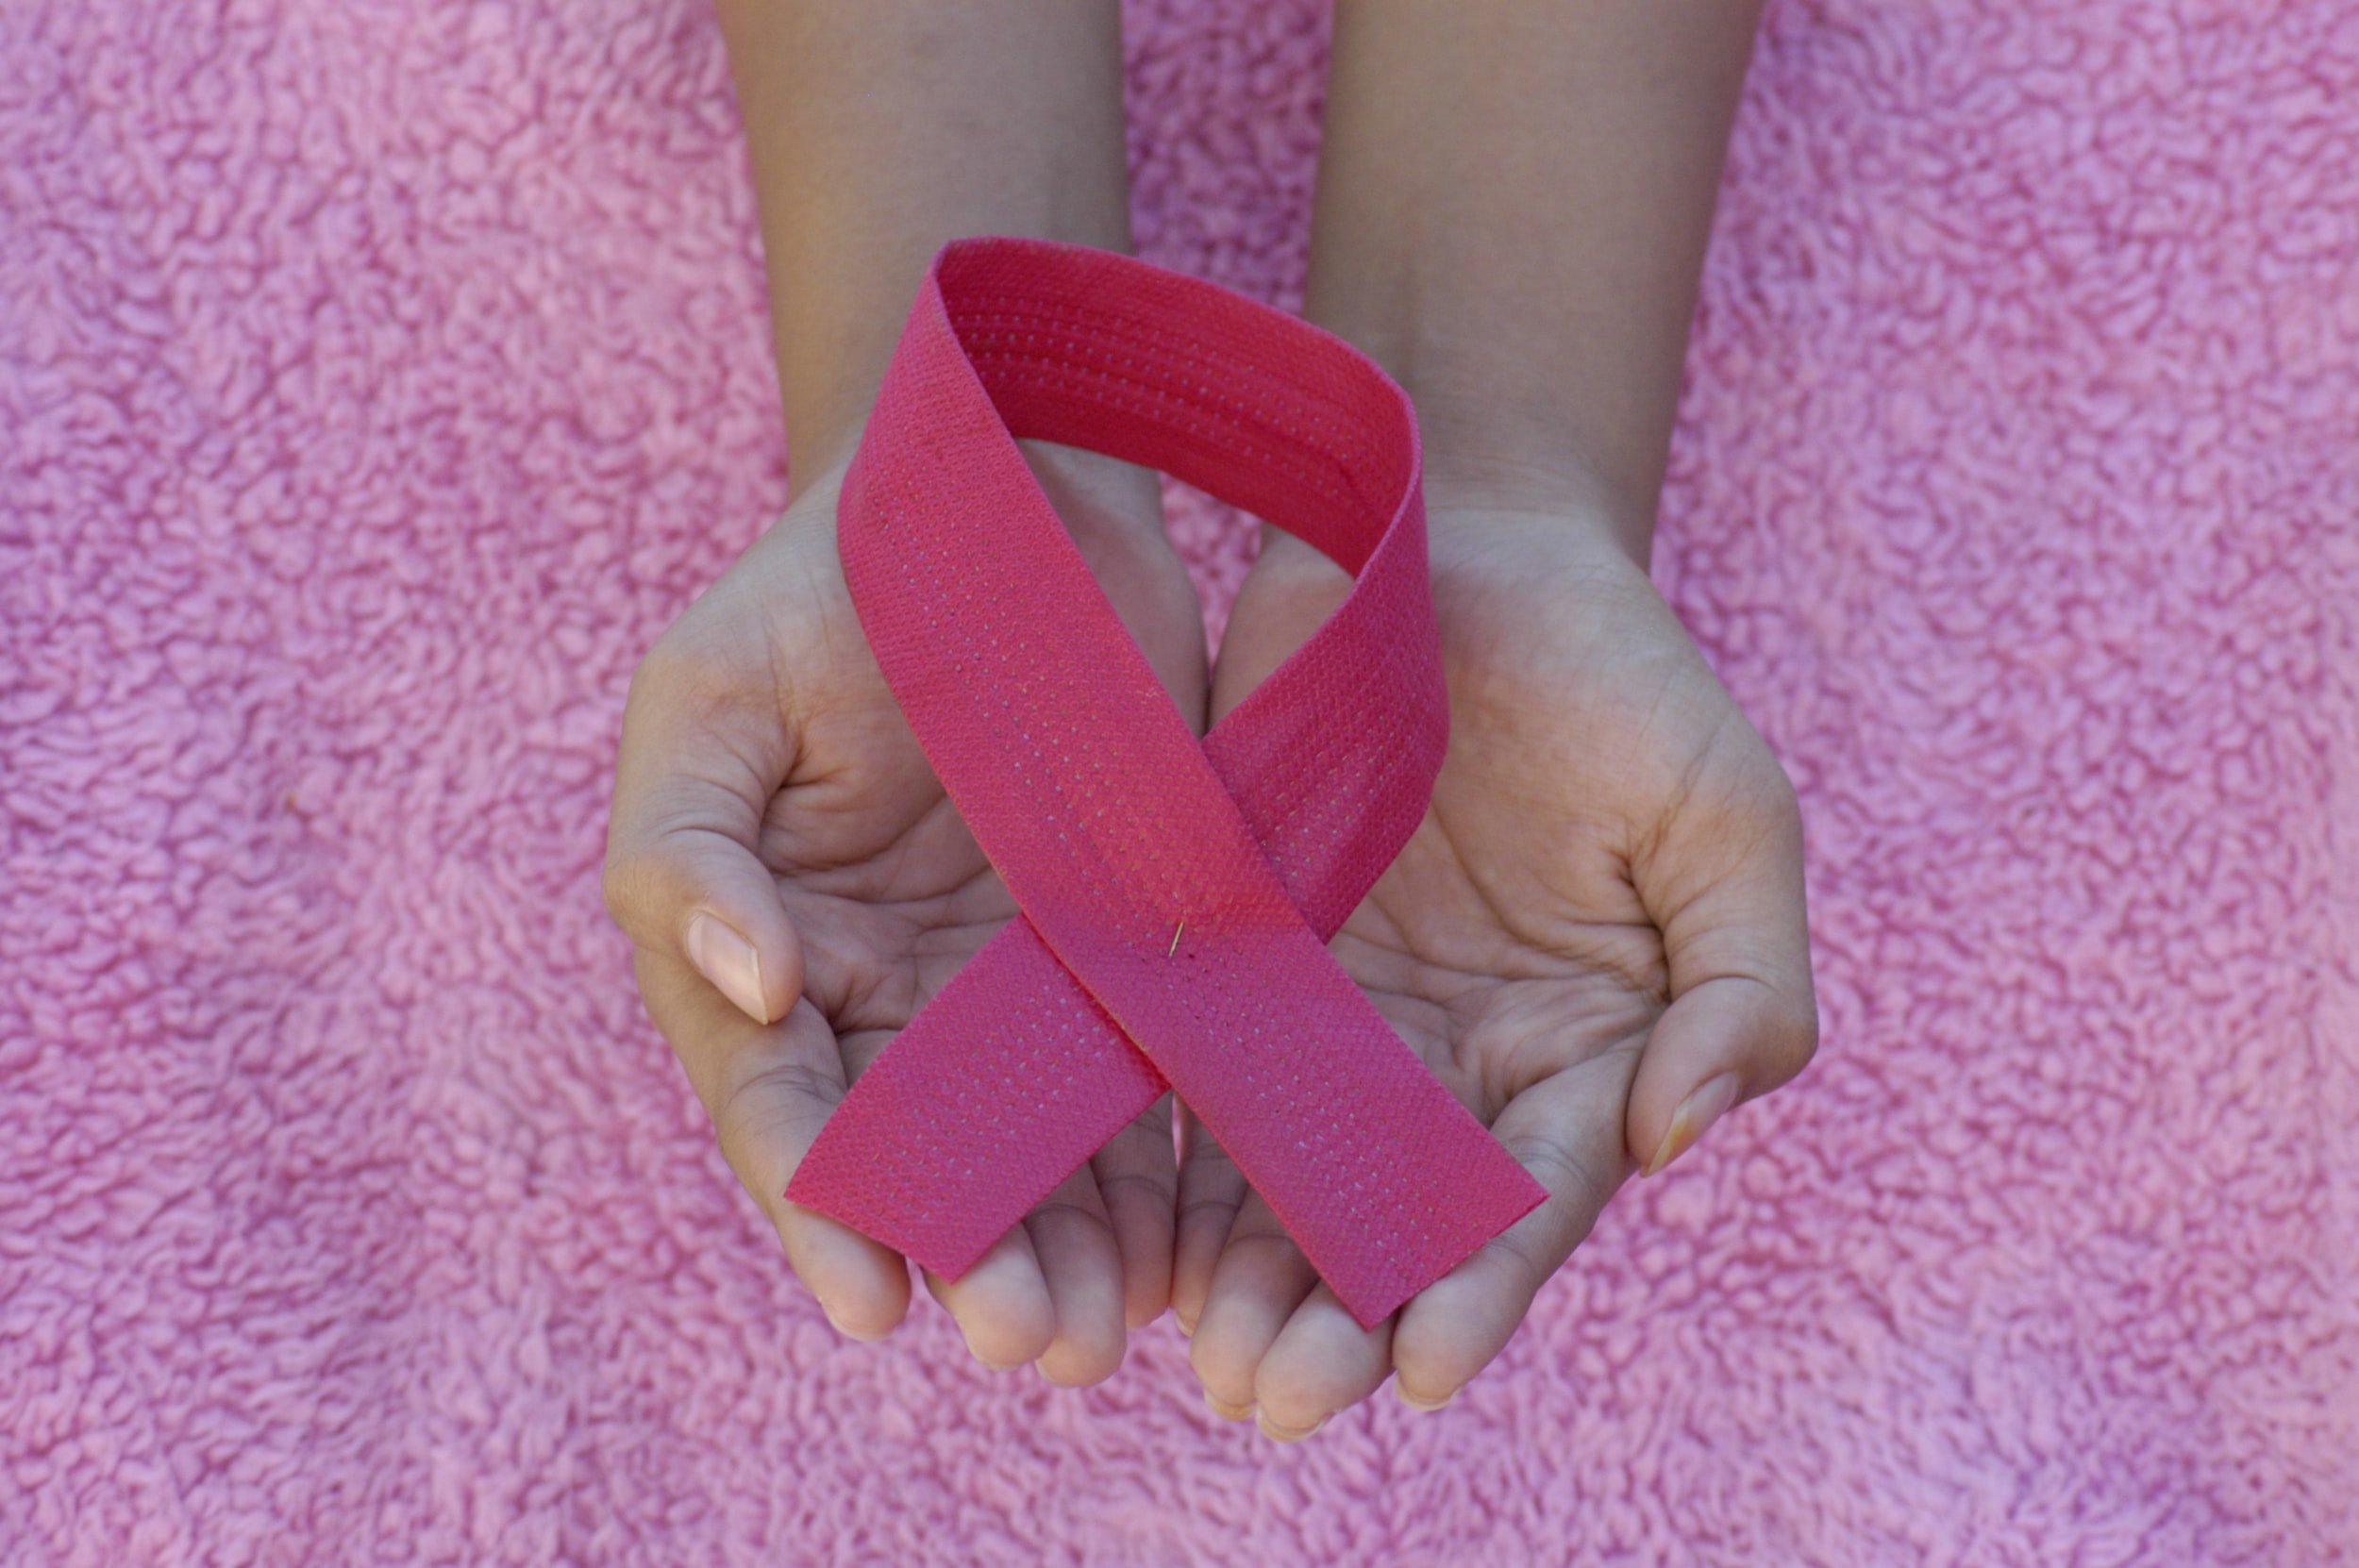 Pacientes con cáncer de mama utilizan medicina cannabinoide a la par de tratamientos convencionales